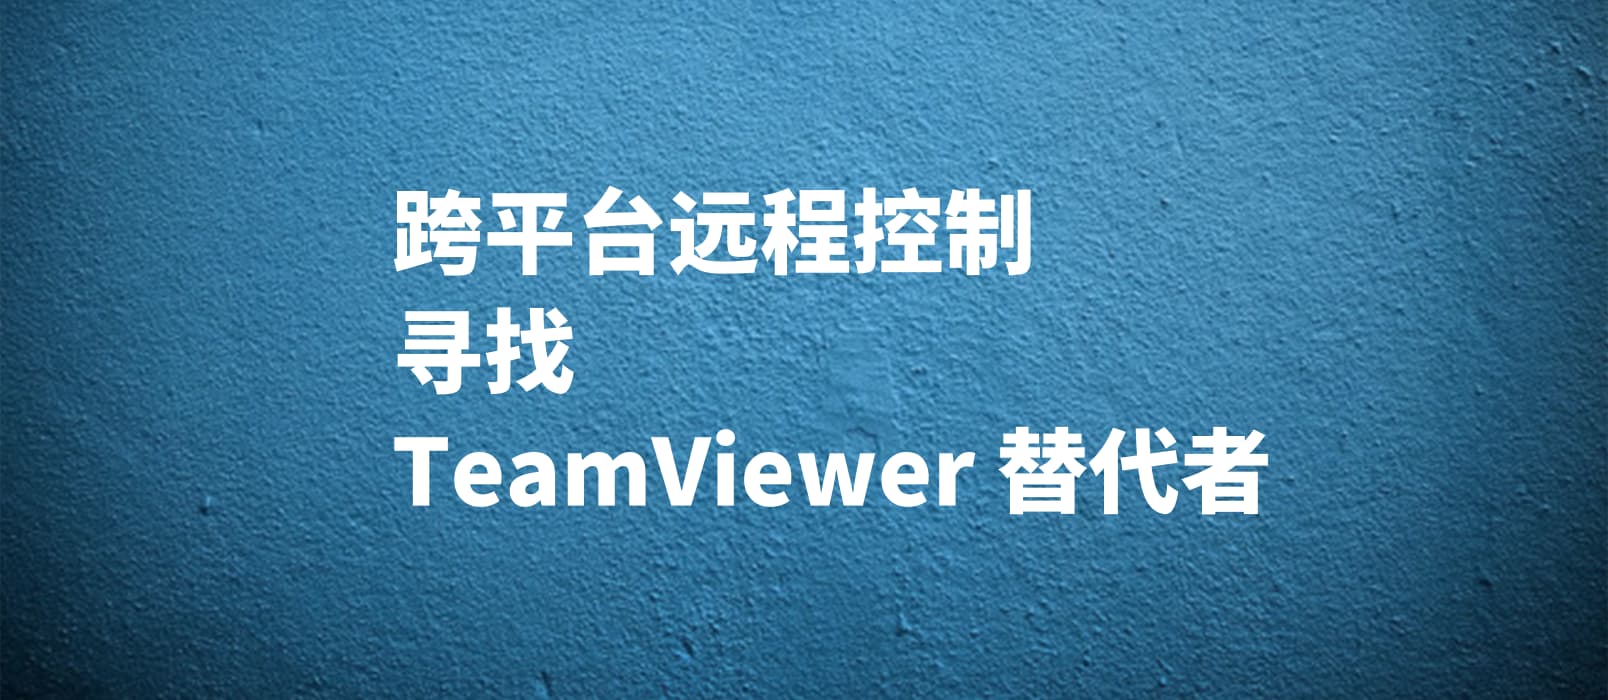 个人用户，求替代 Teamviewer 的远程控制软件 1